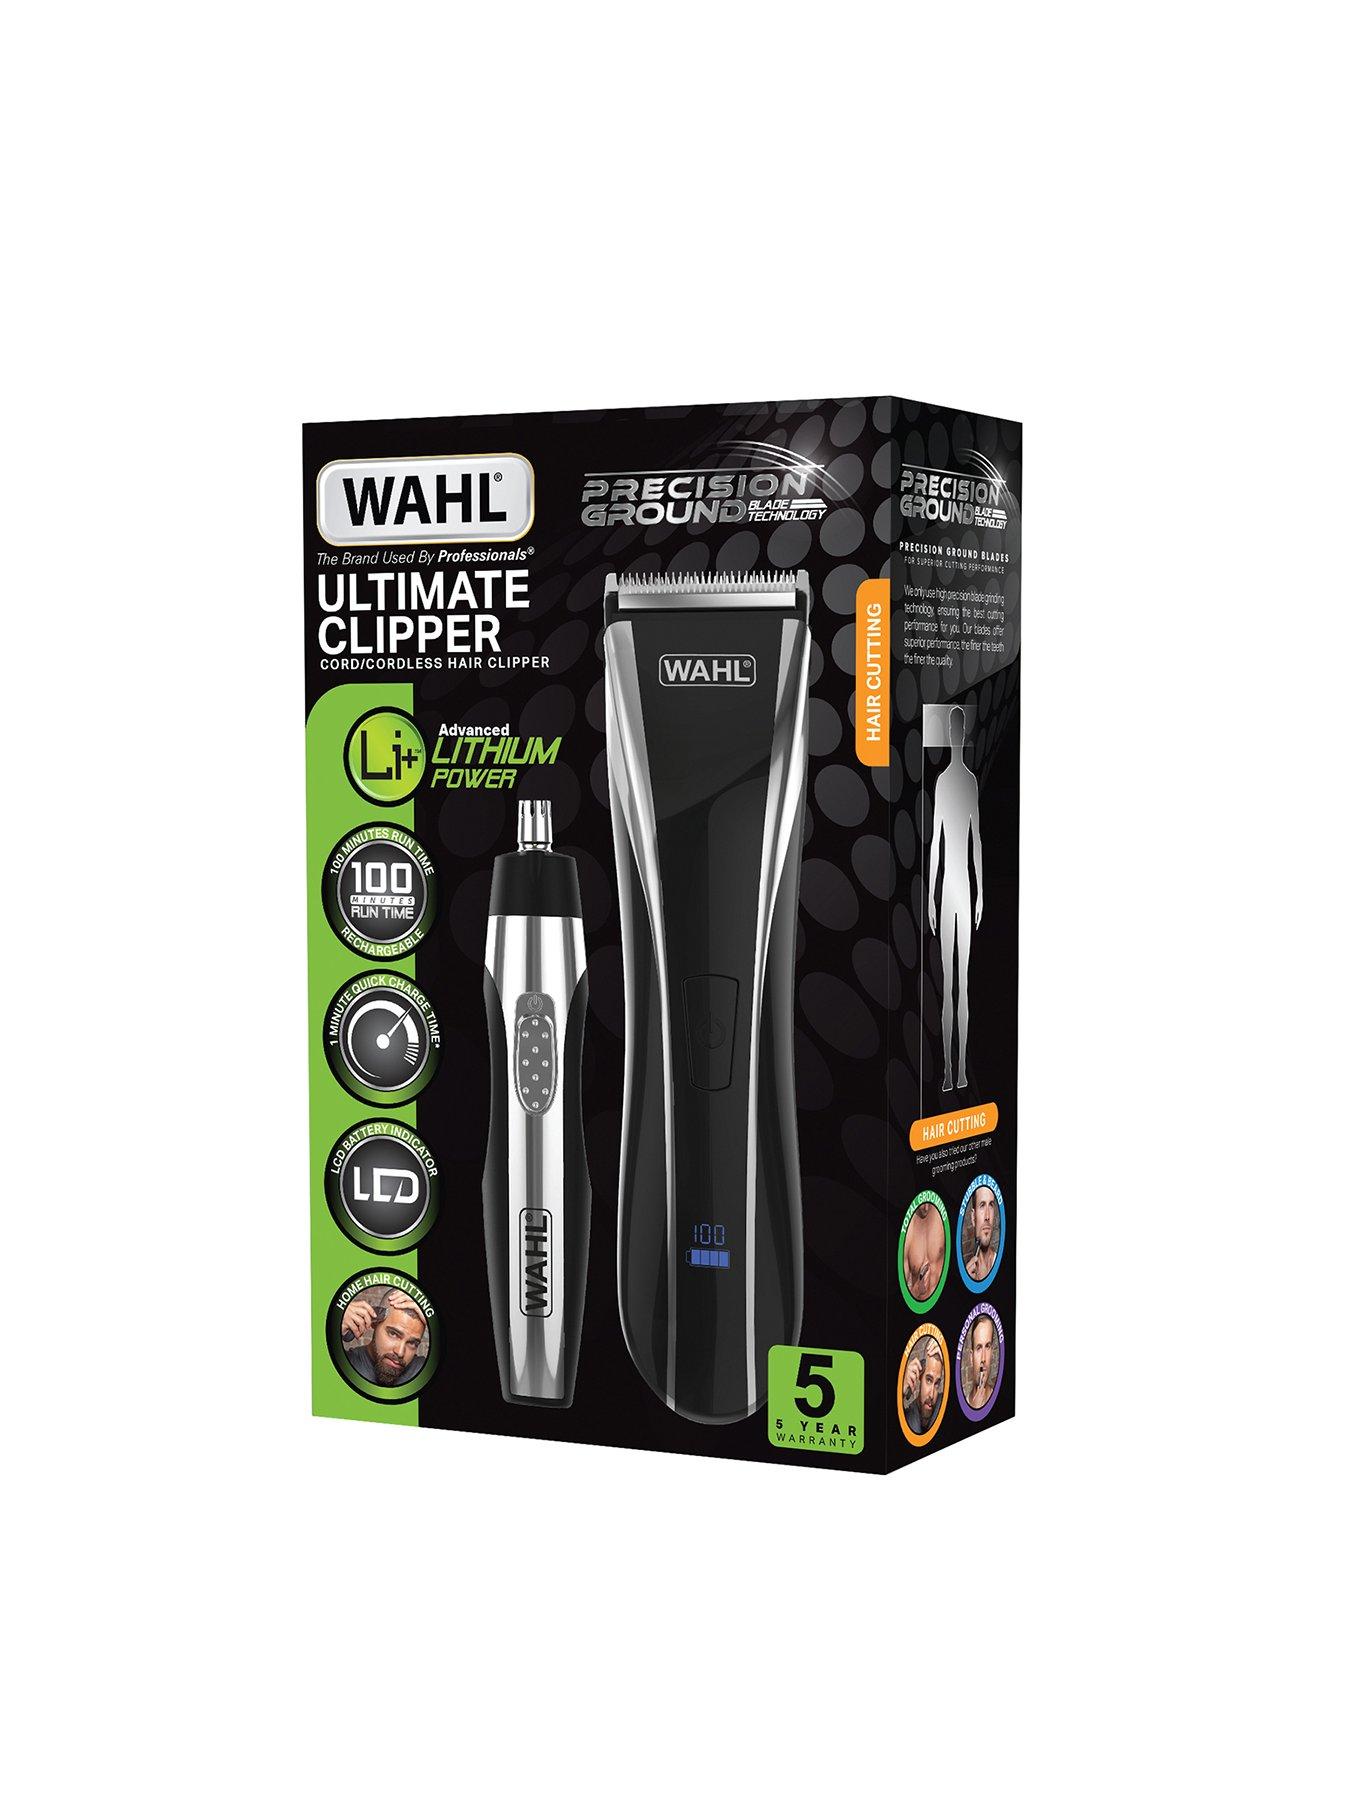 wahl lithium power cordless hair clipper